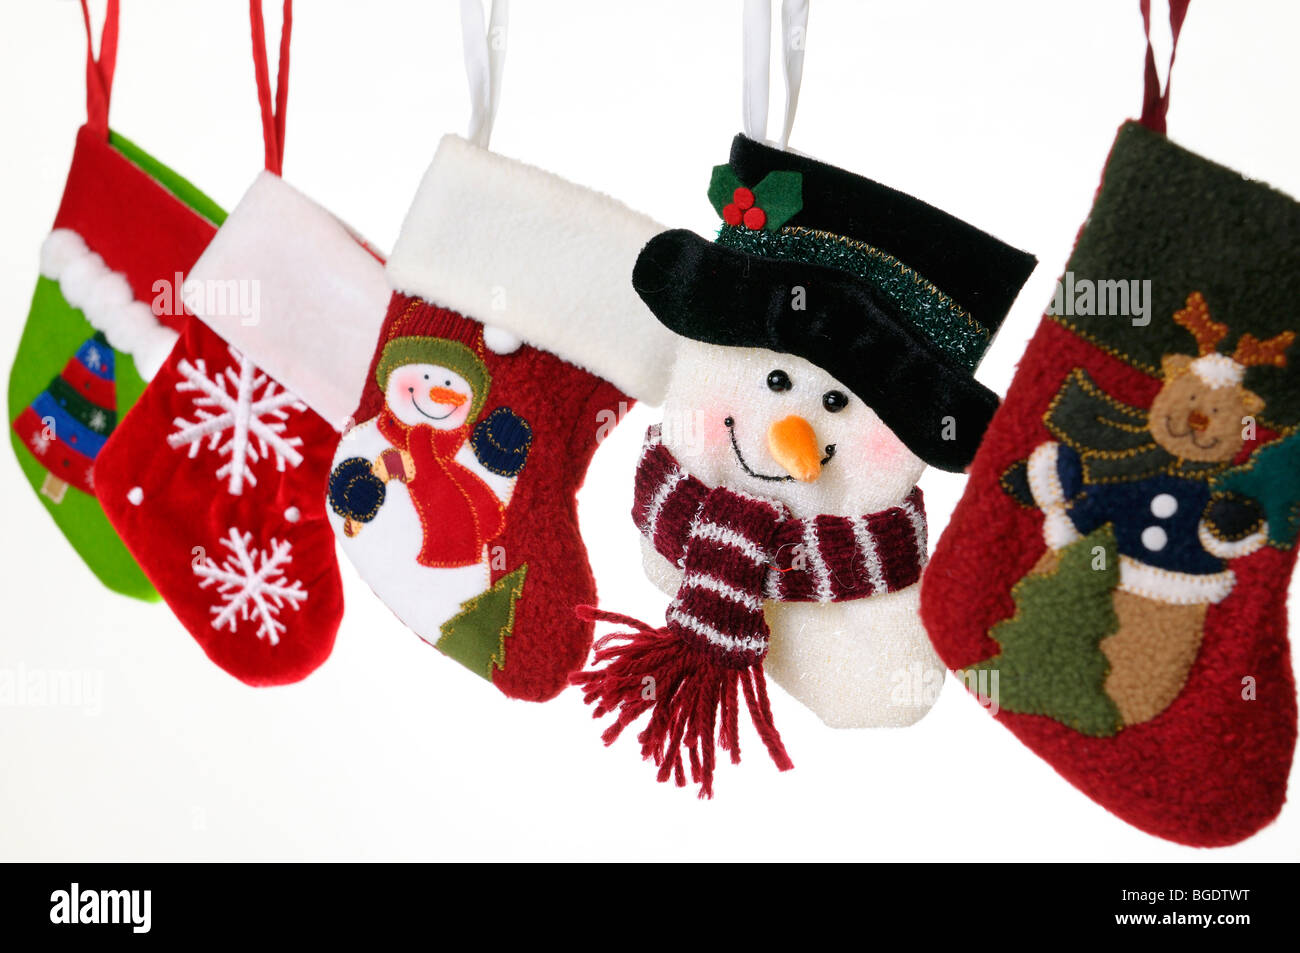 Collezione unica di calze di Natale con pupazzi di neve, Teddy bear,  fiocchi di neve, decorate albero, appeso su sfondo bianco Foto stock - Alamy